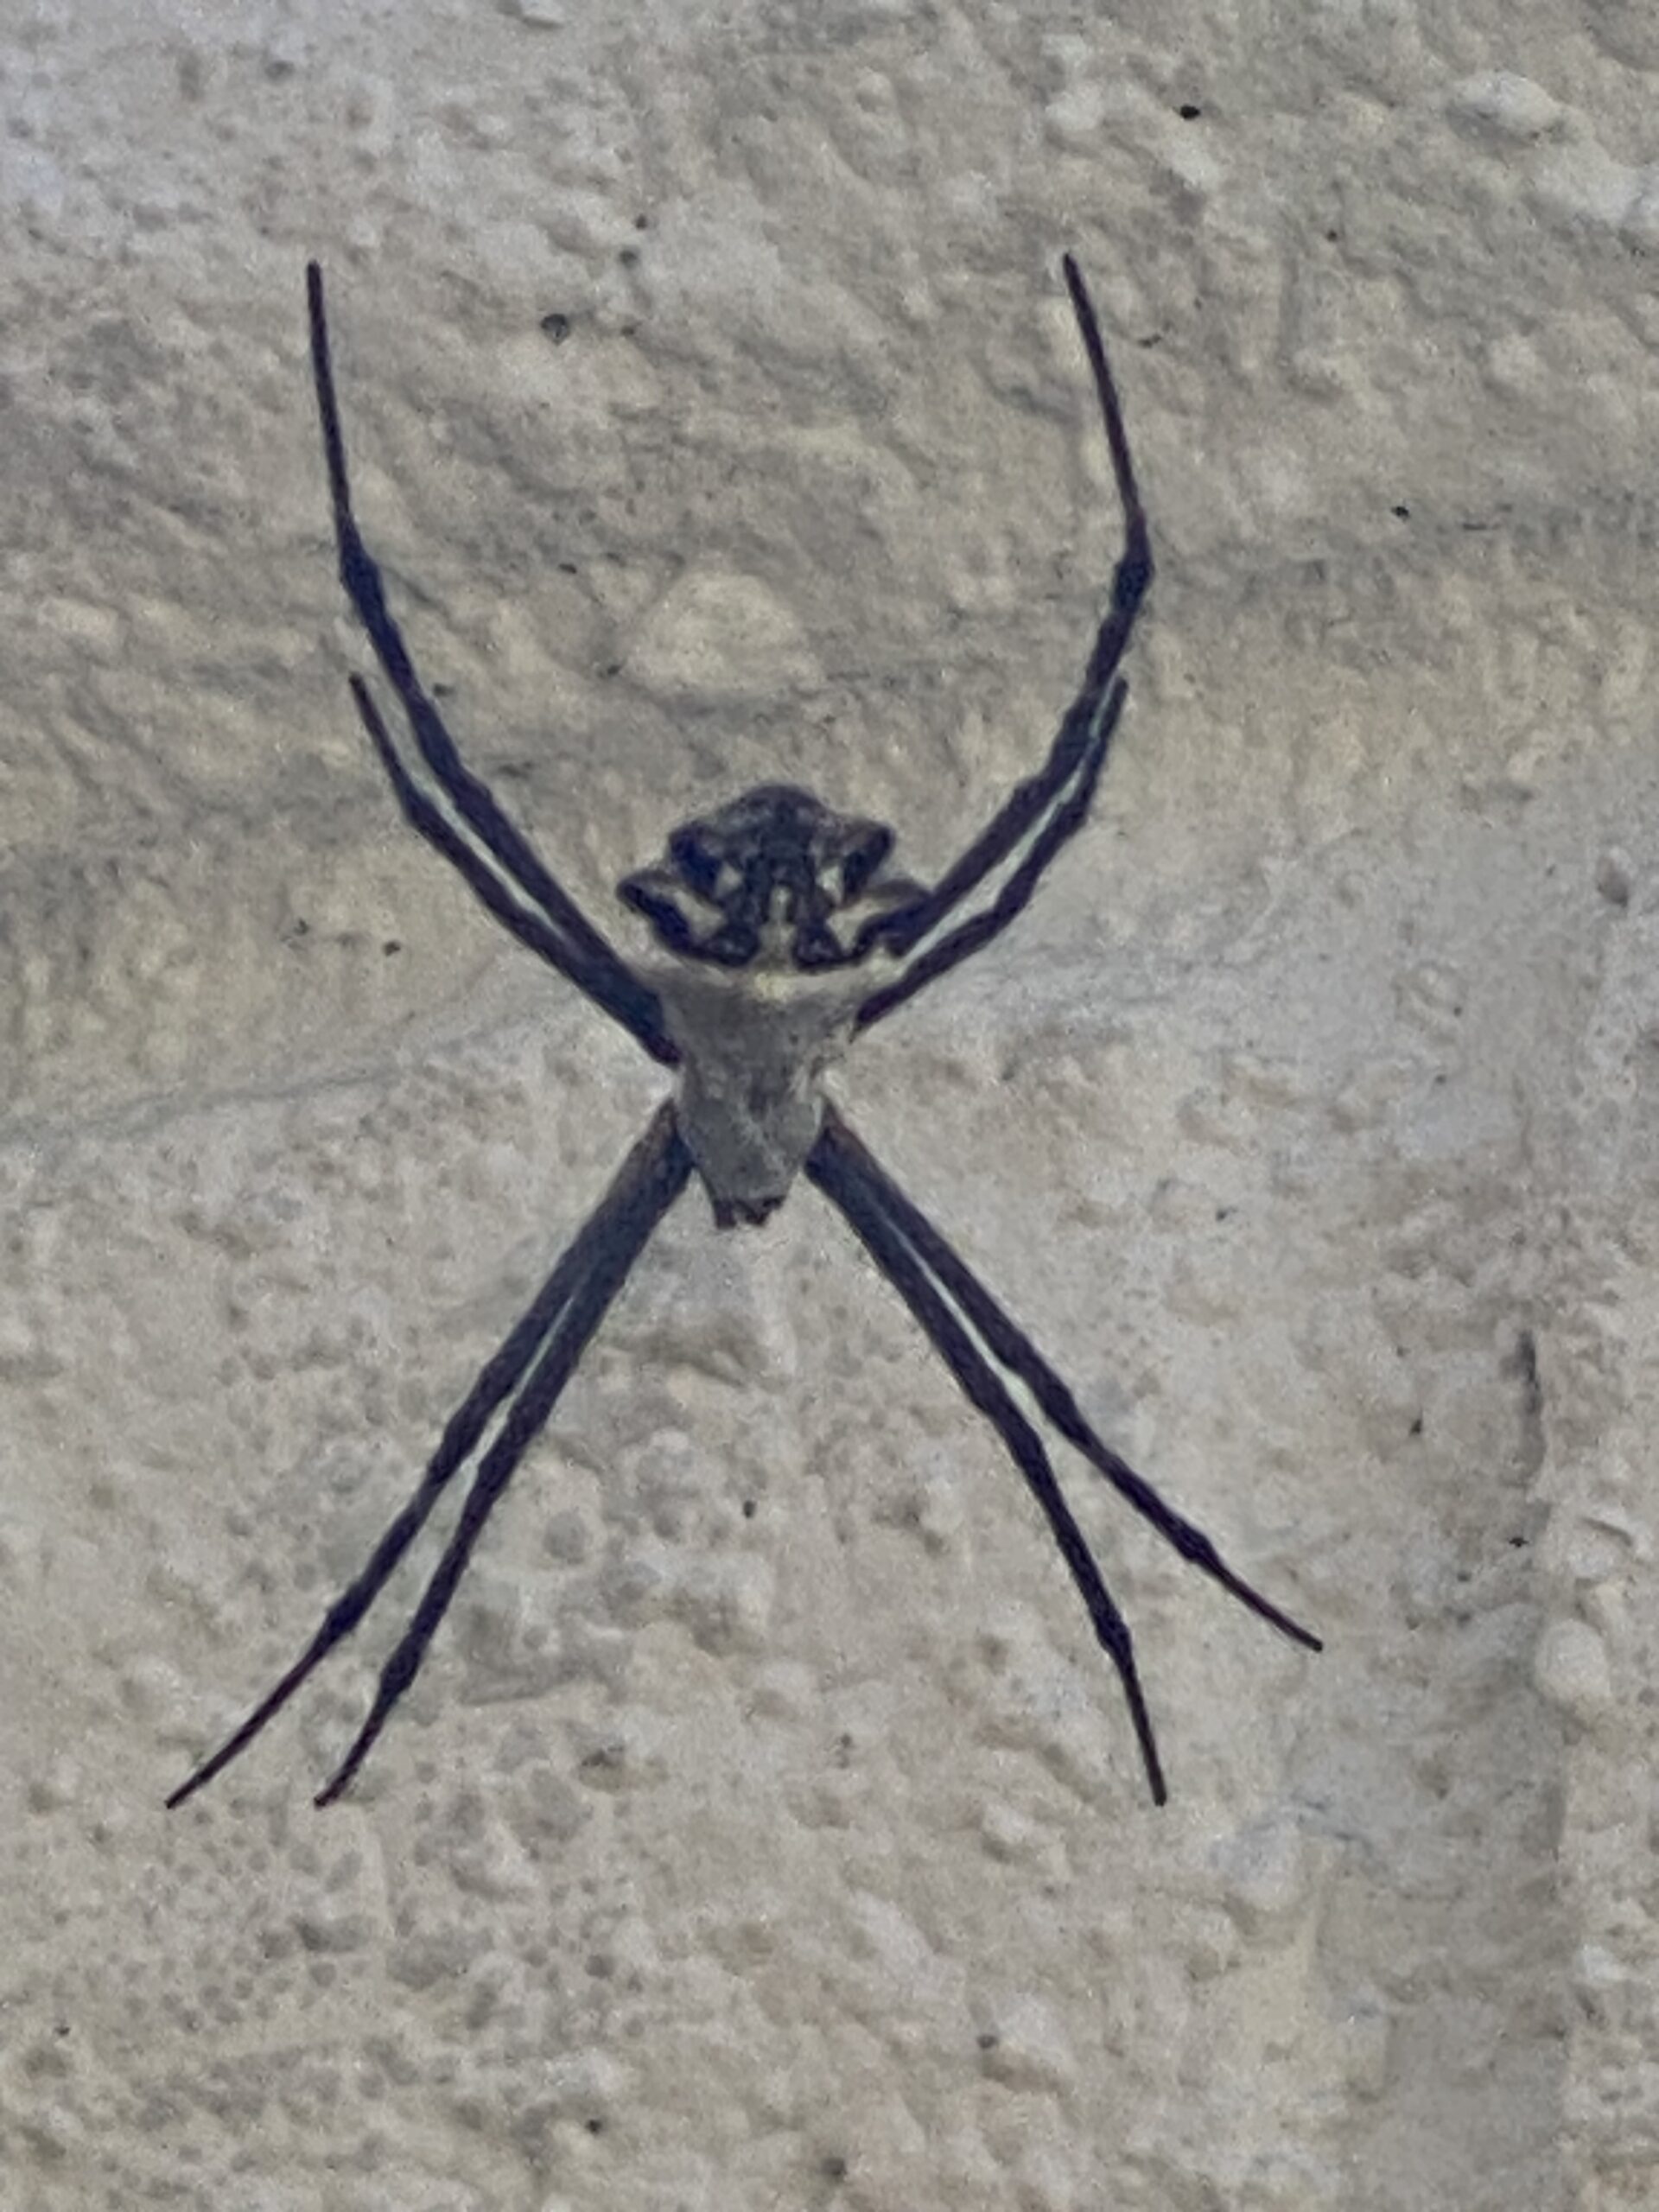 Picture of Argiope argentata (Silver Garden Spider)